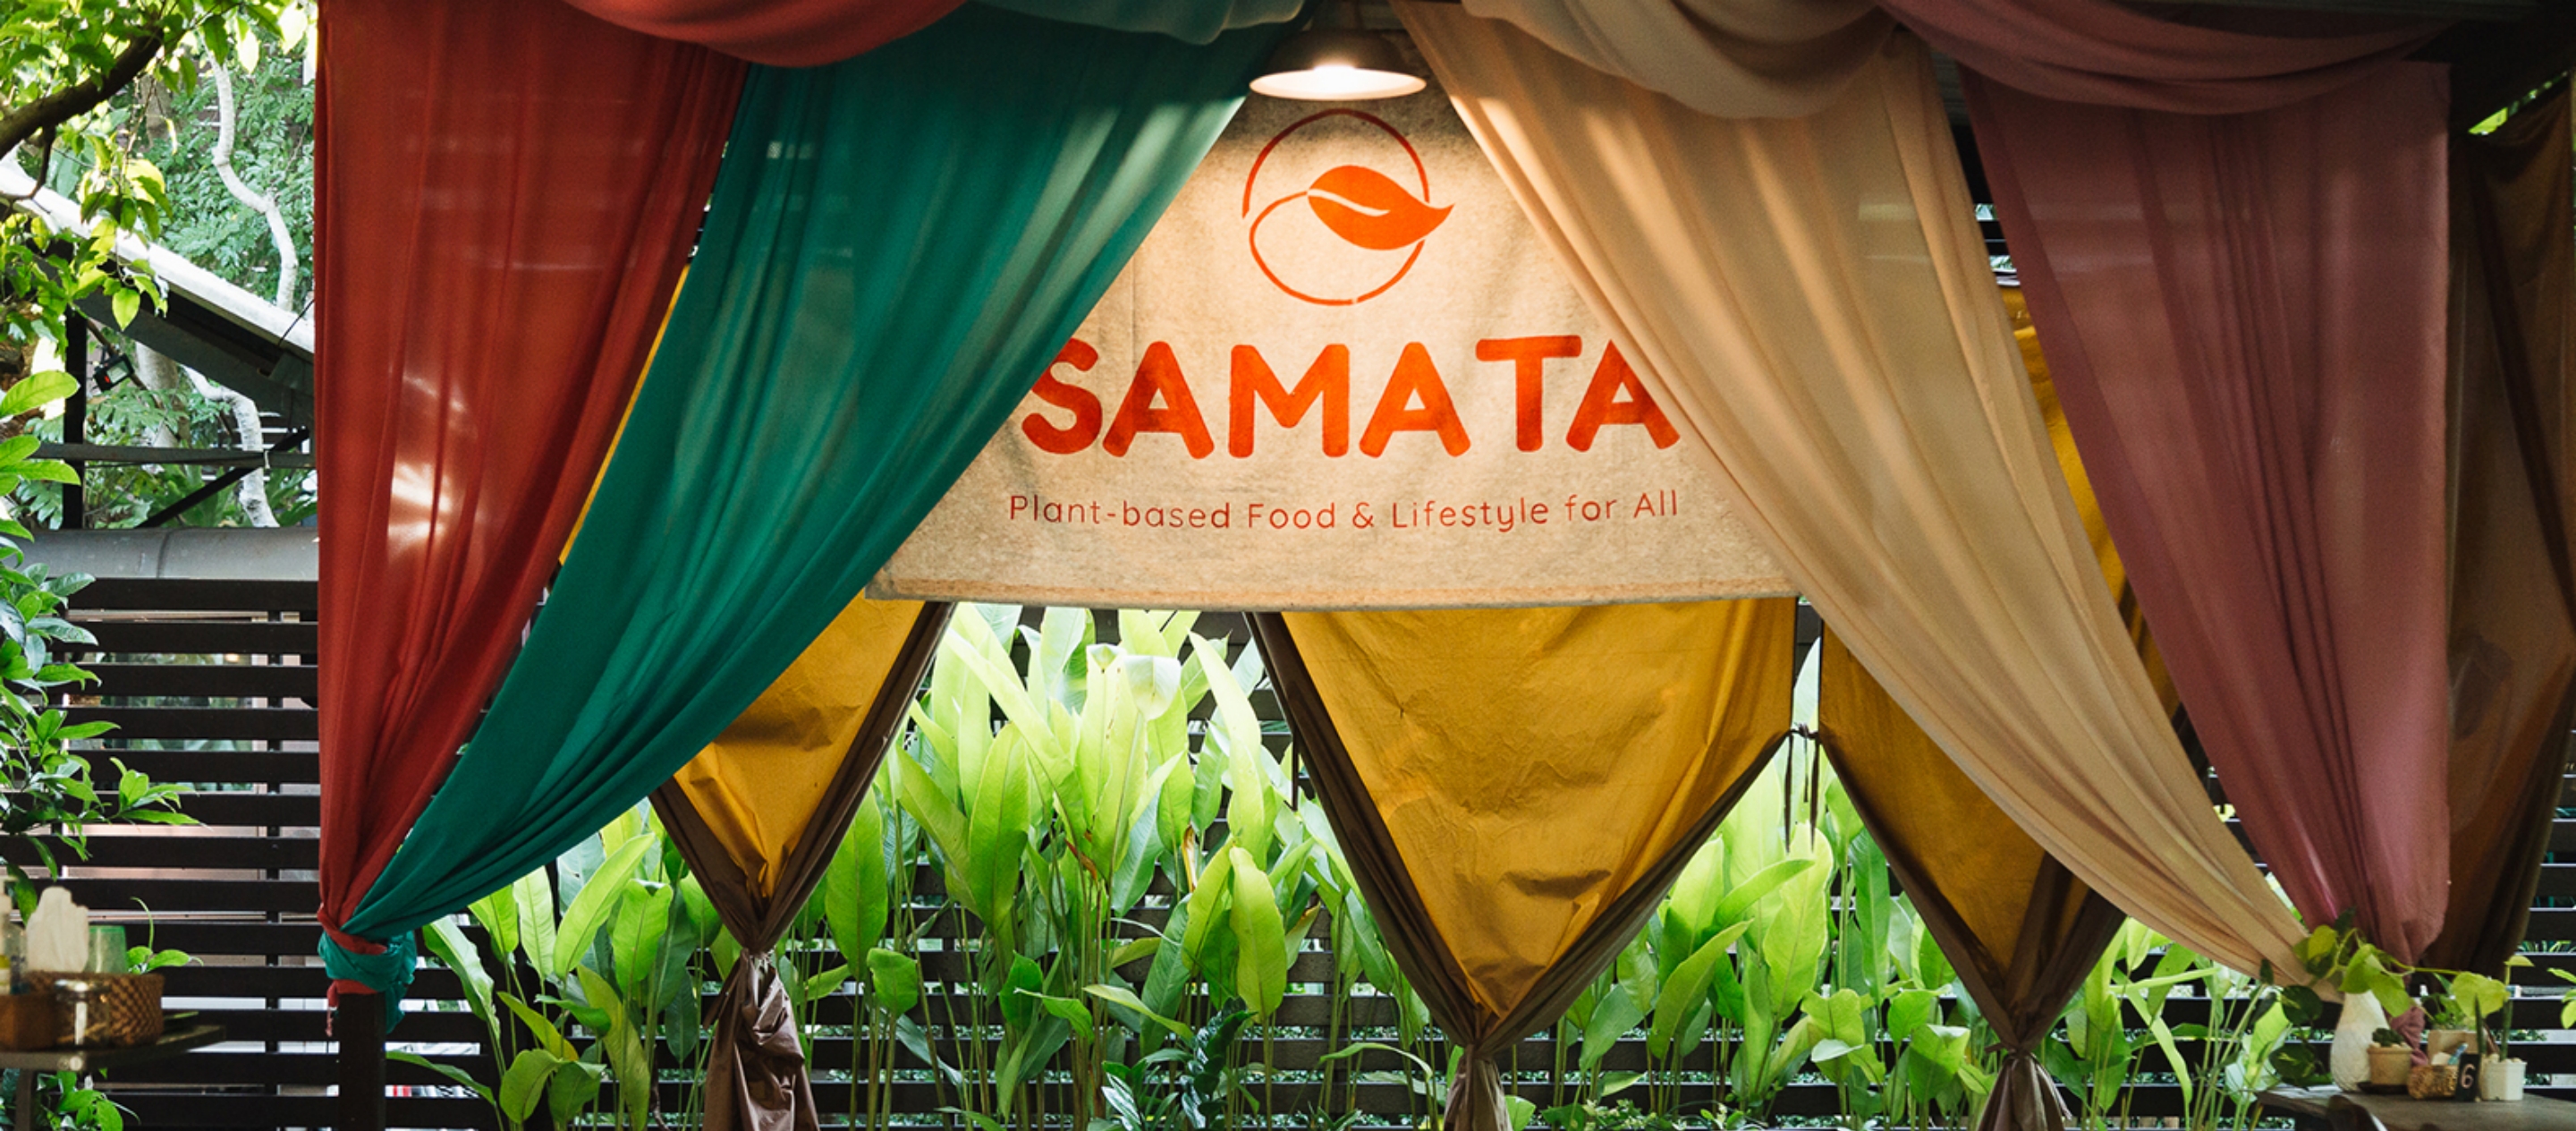 SAMATA ร้านอาหาร Plant-Based แสนเรียบง่ายและพื้นที่คอมมูนคนมังสวิรัติในเชียงใหม่